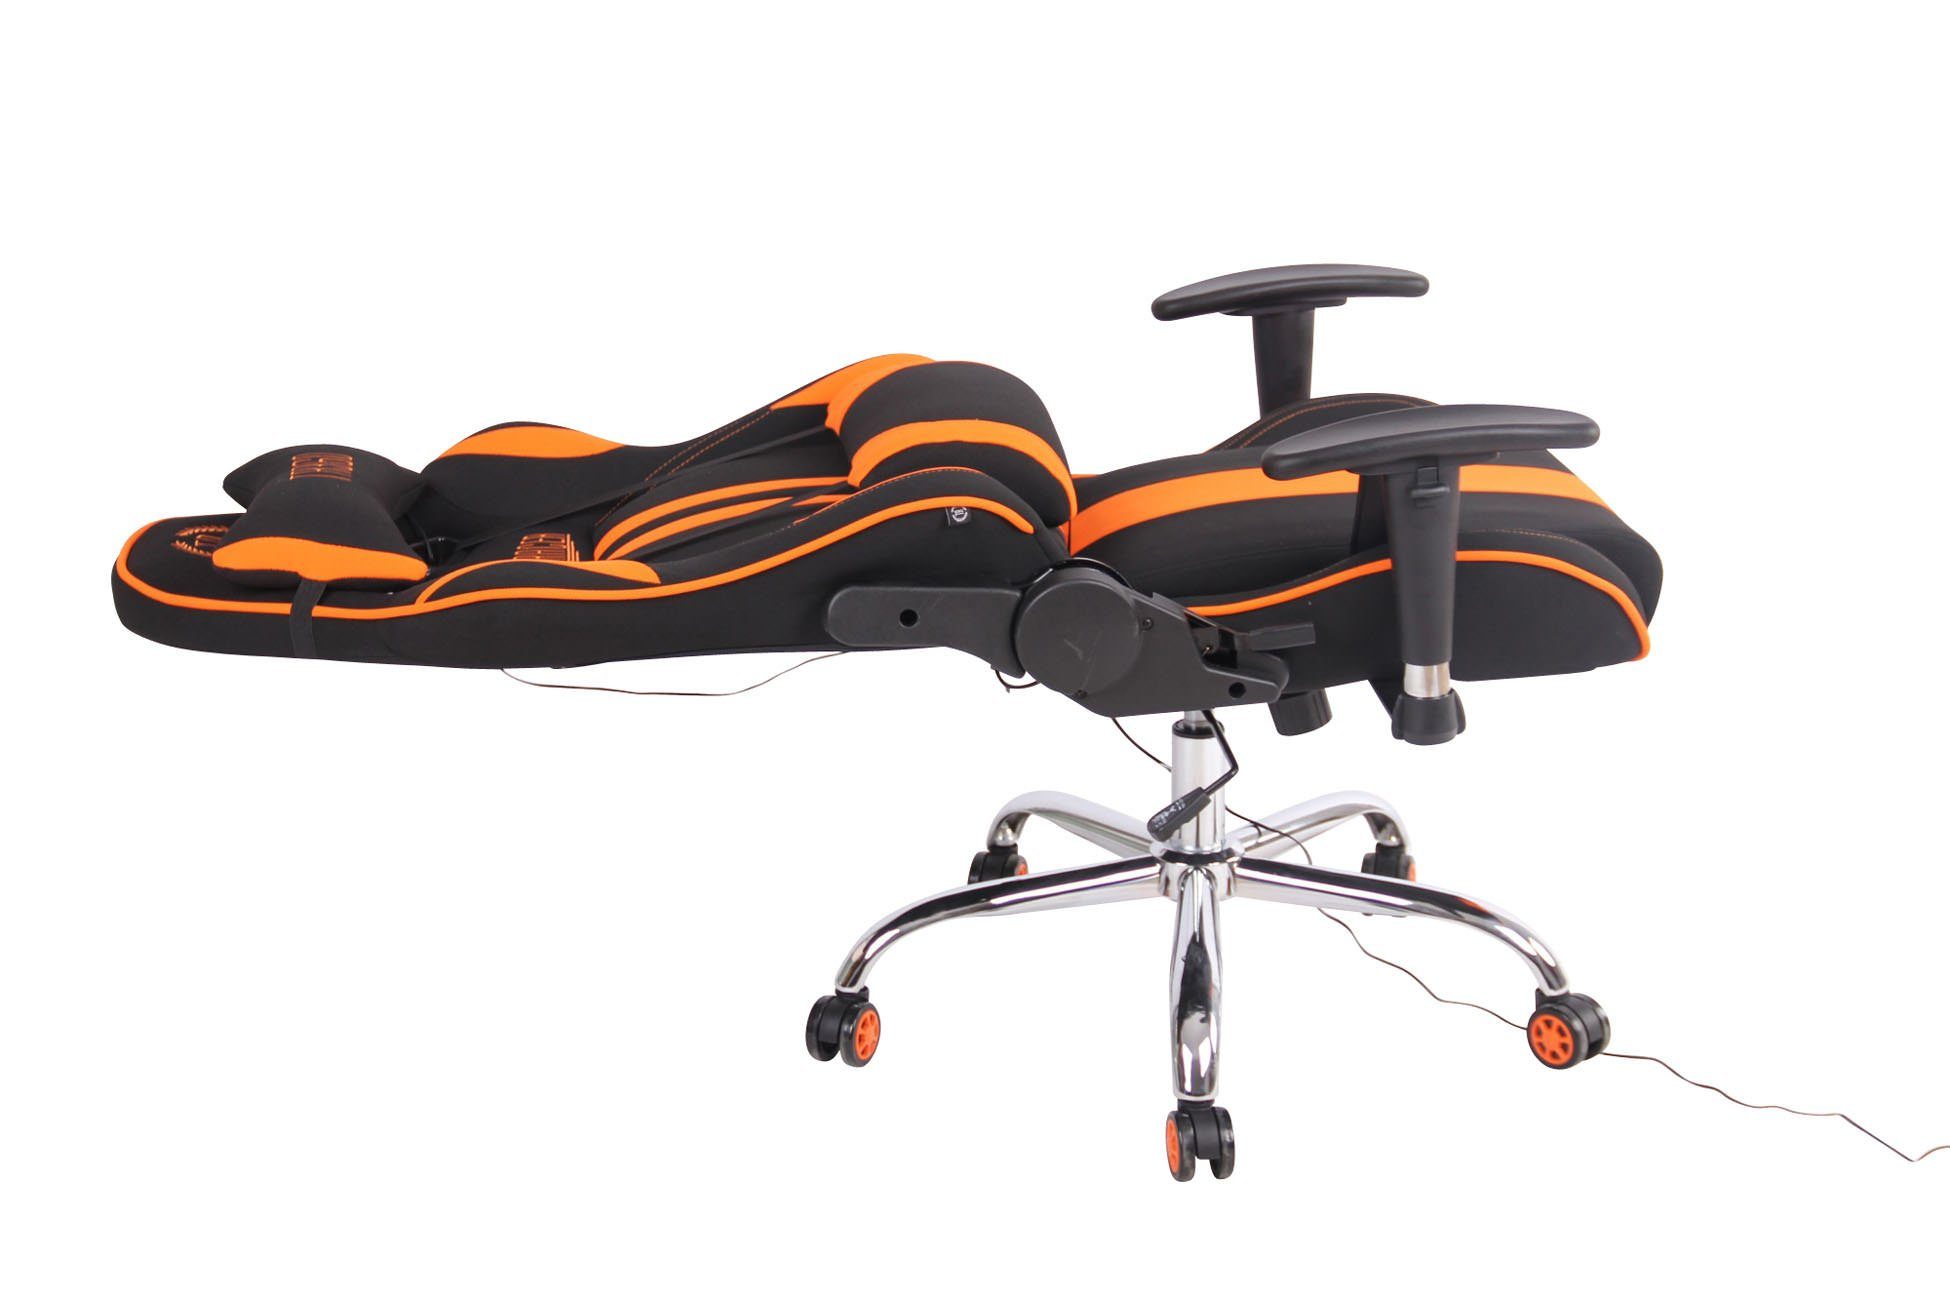 Gaming schwarz/orange Stoff, CLP Chair mit Massagefunktion Limit XM